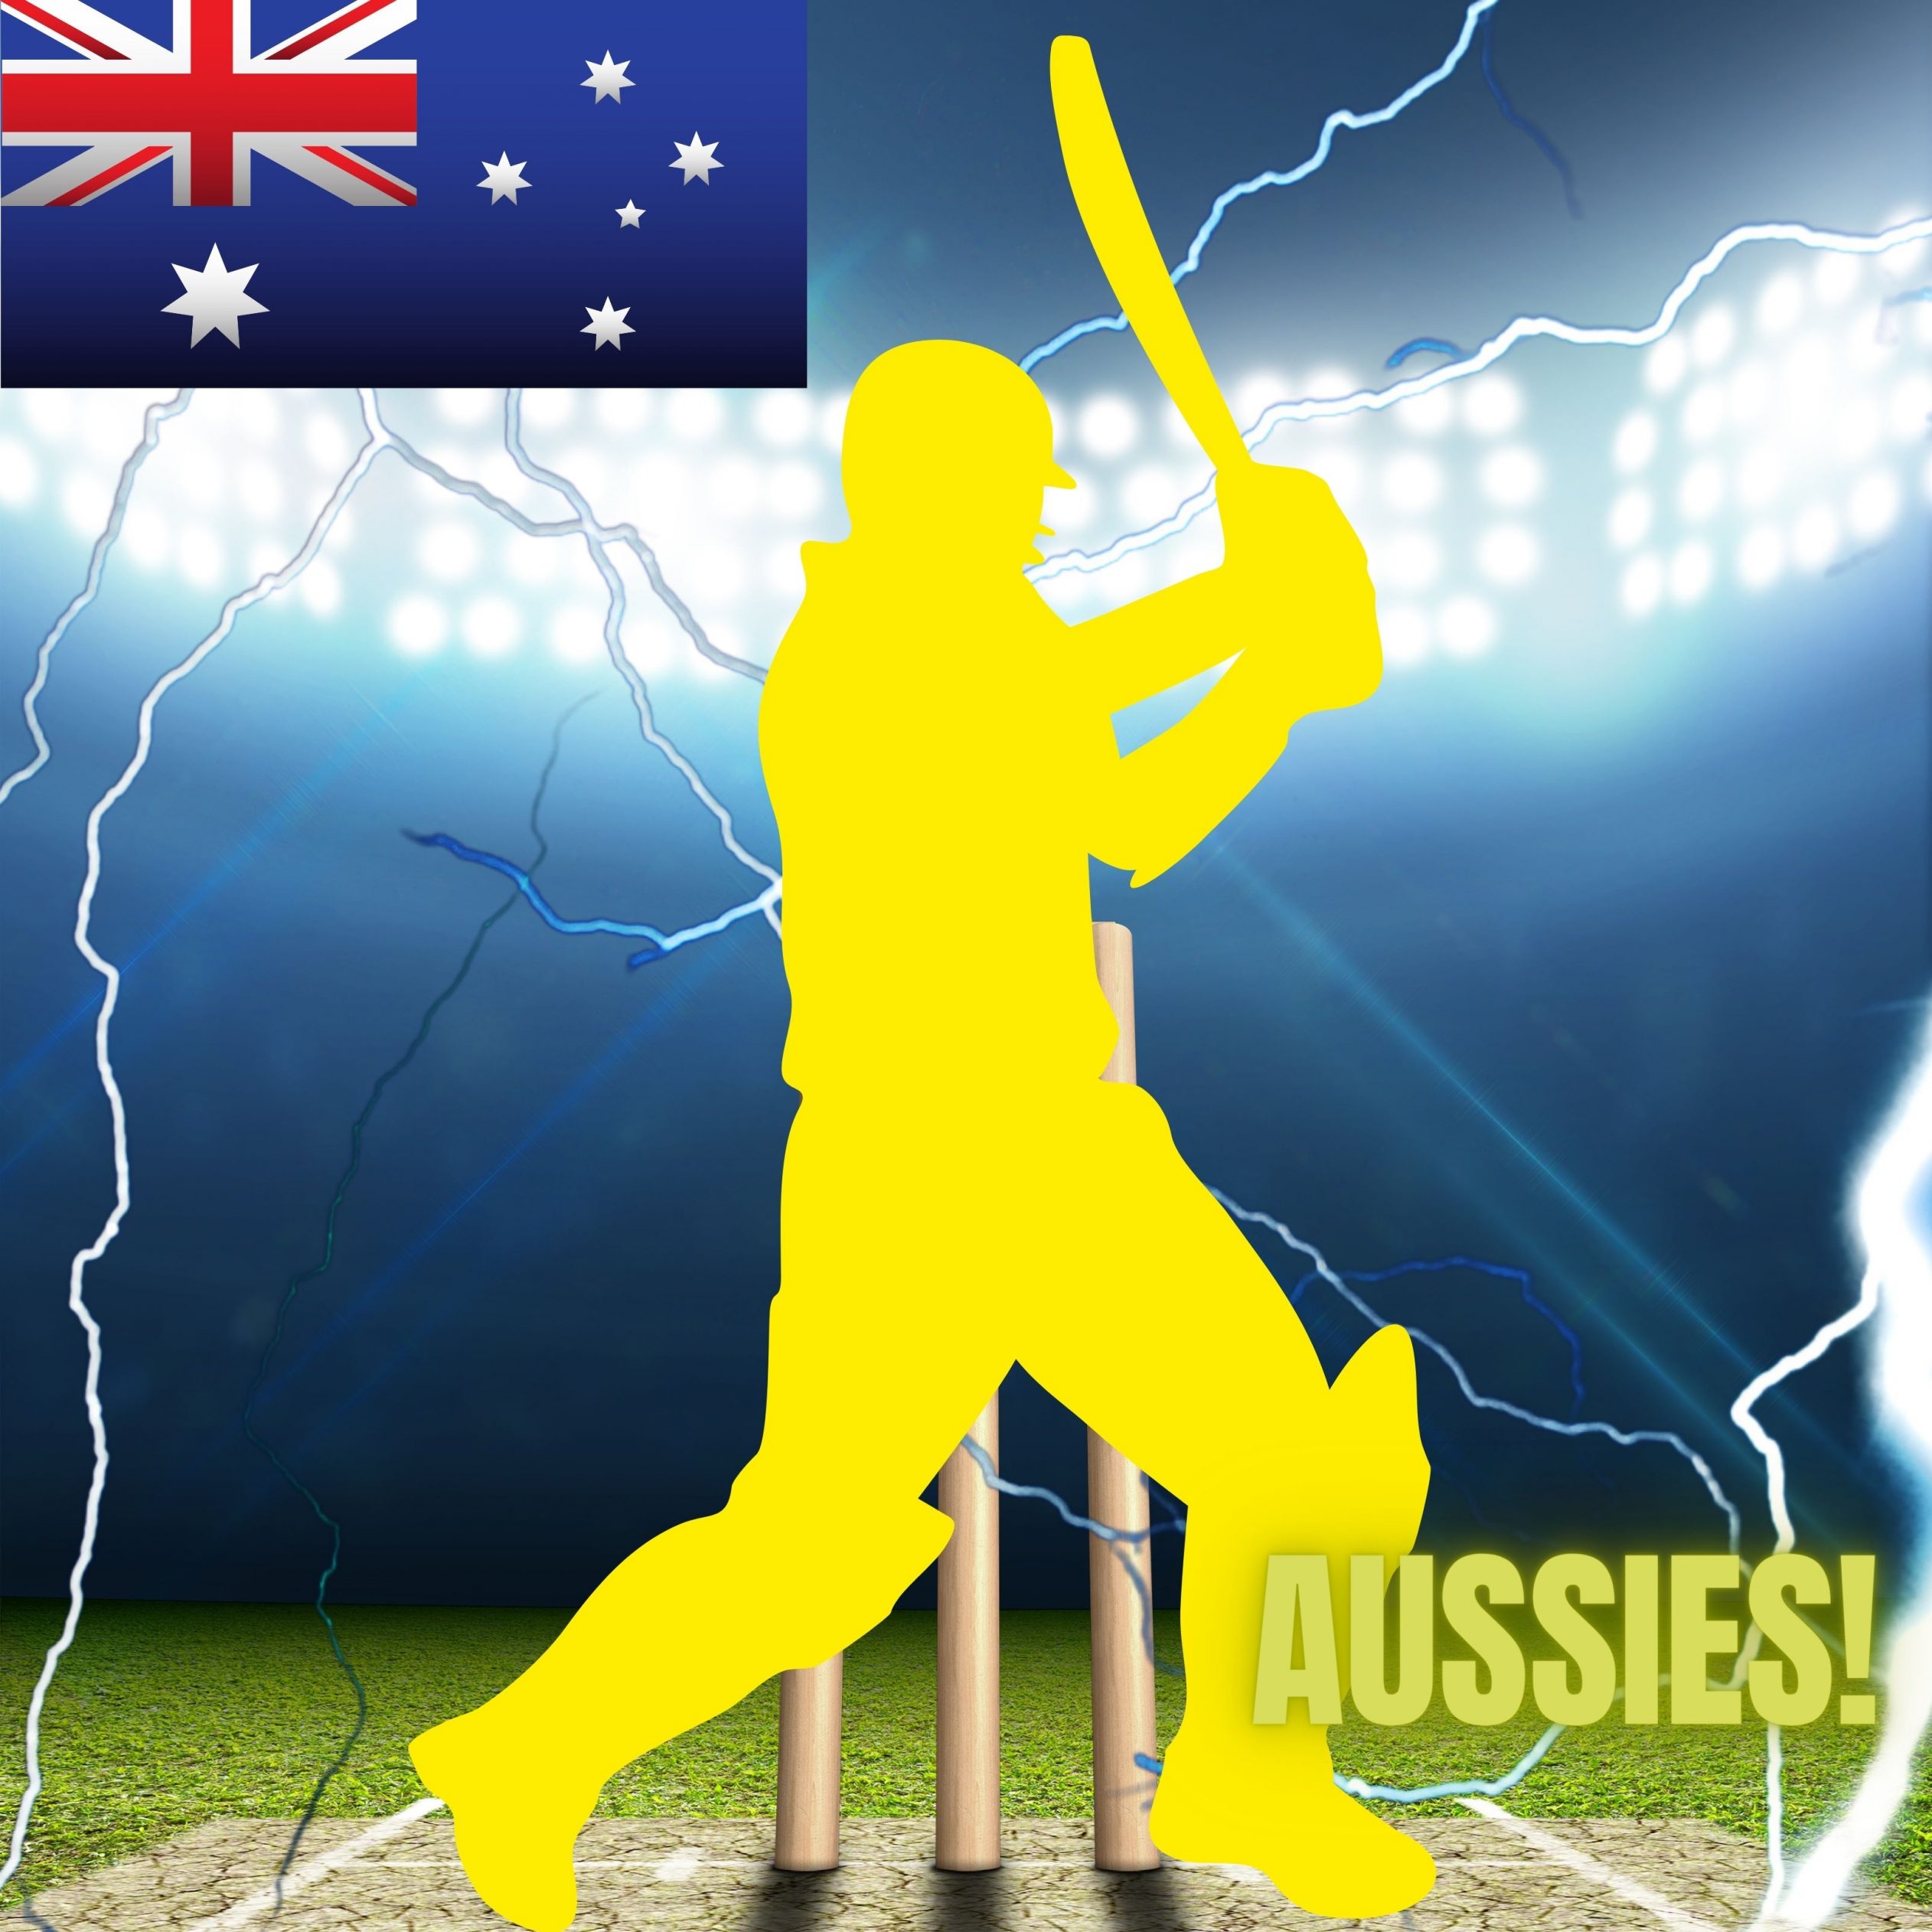 2524x2524 Parallax wallpaper 4k Australia Cricket Stadium iPad Wallpaper 2524x2524 pixels resolution